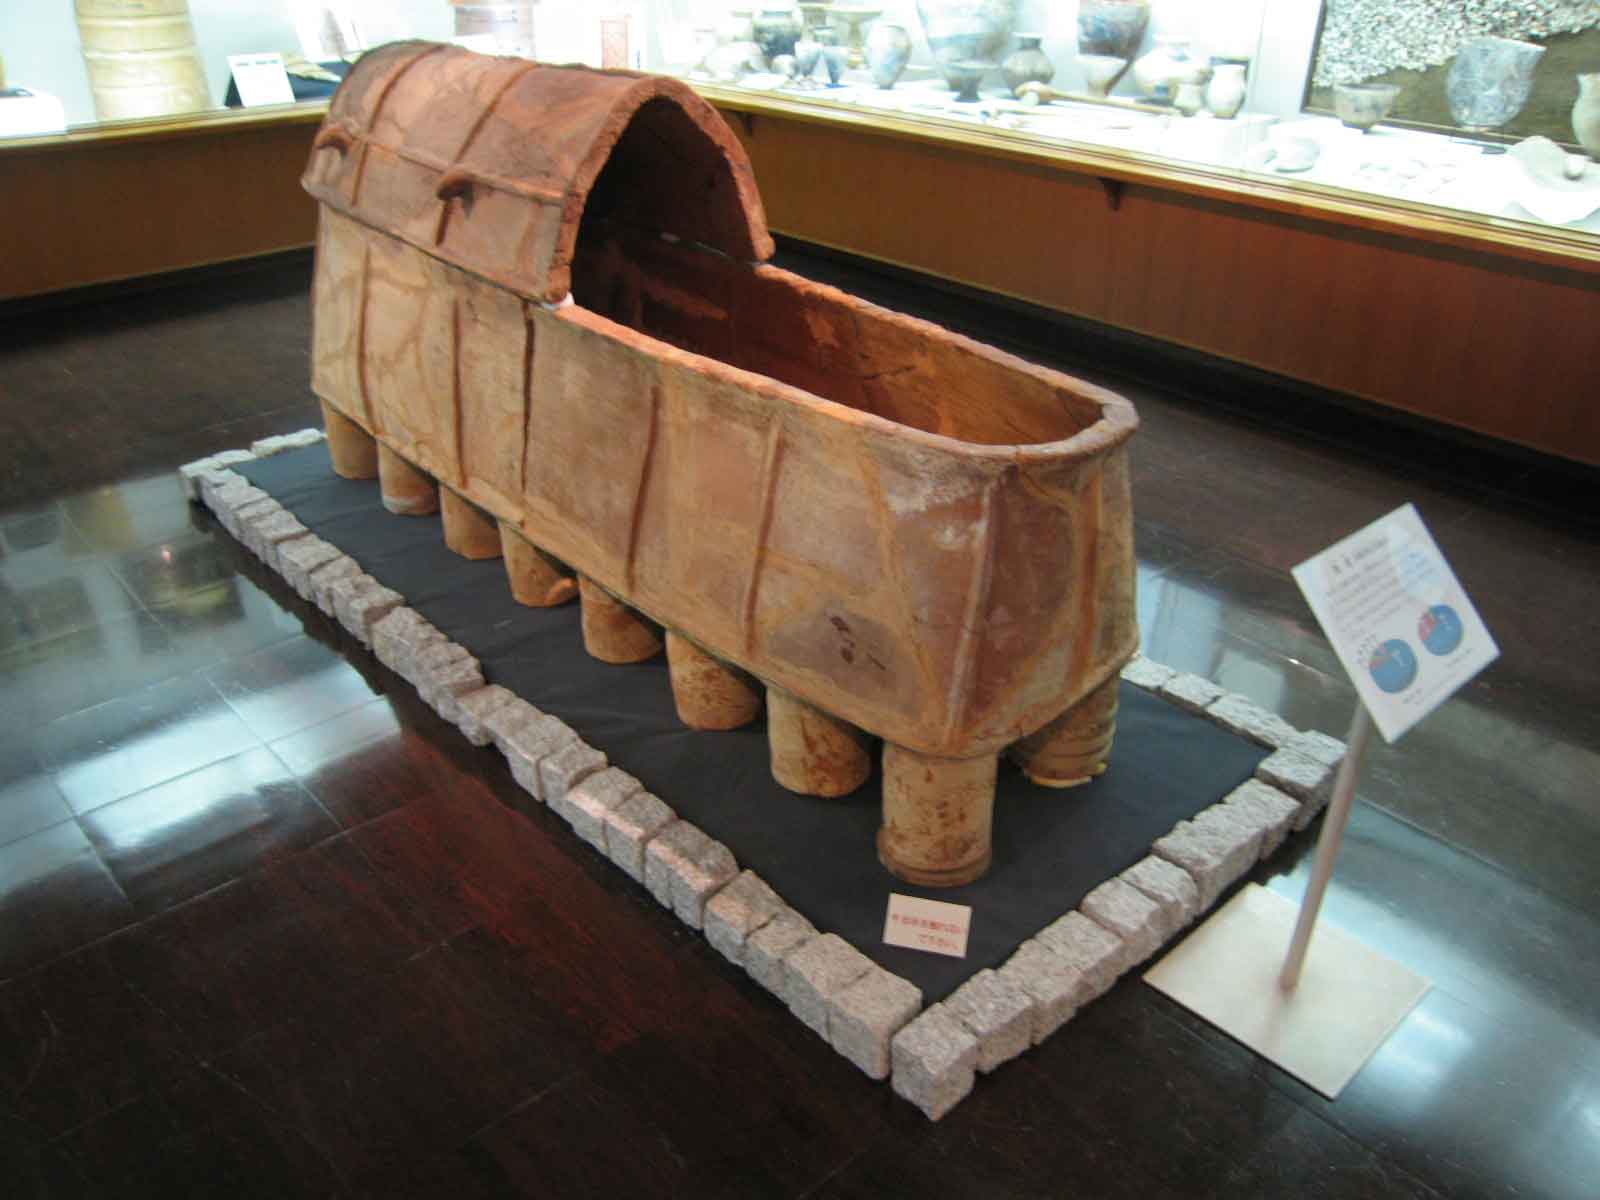 弥上古墳の陶棺